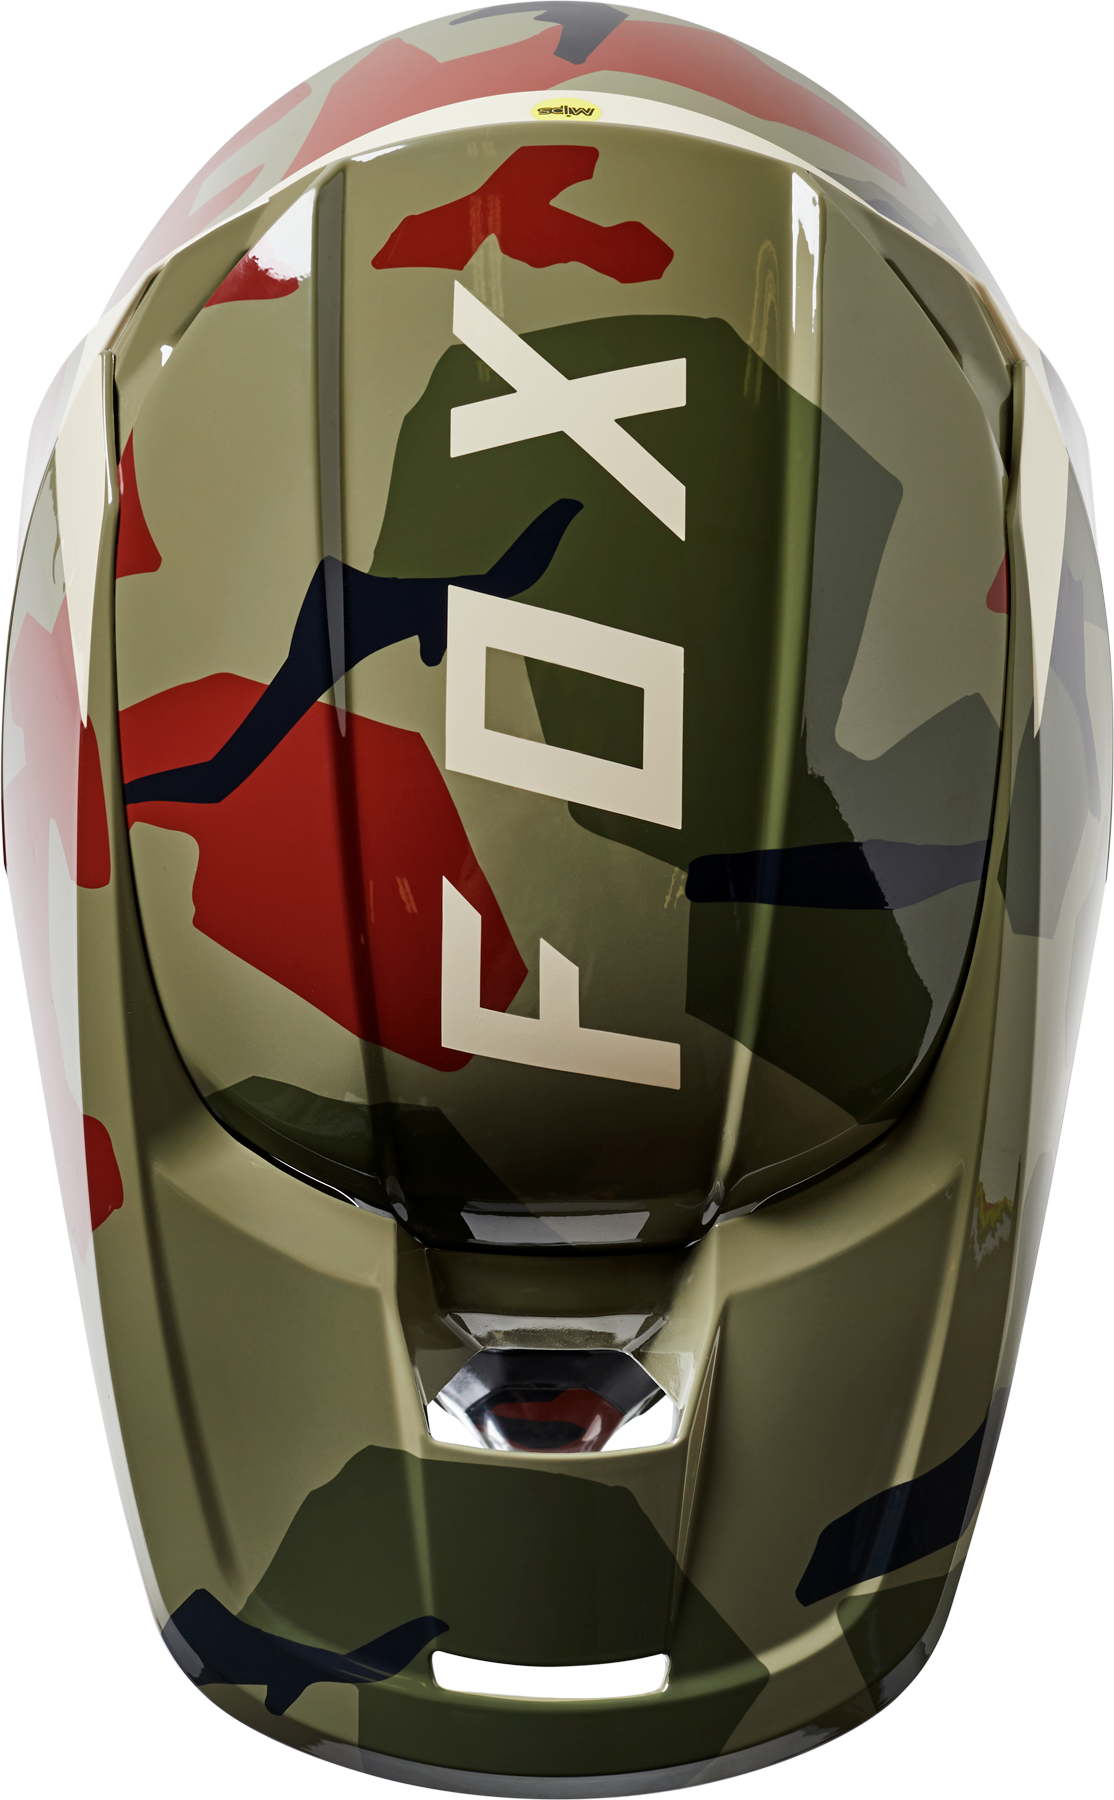 Fox Racing V1 BNKR Helmet  - Green Camo